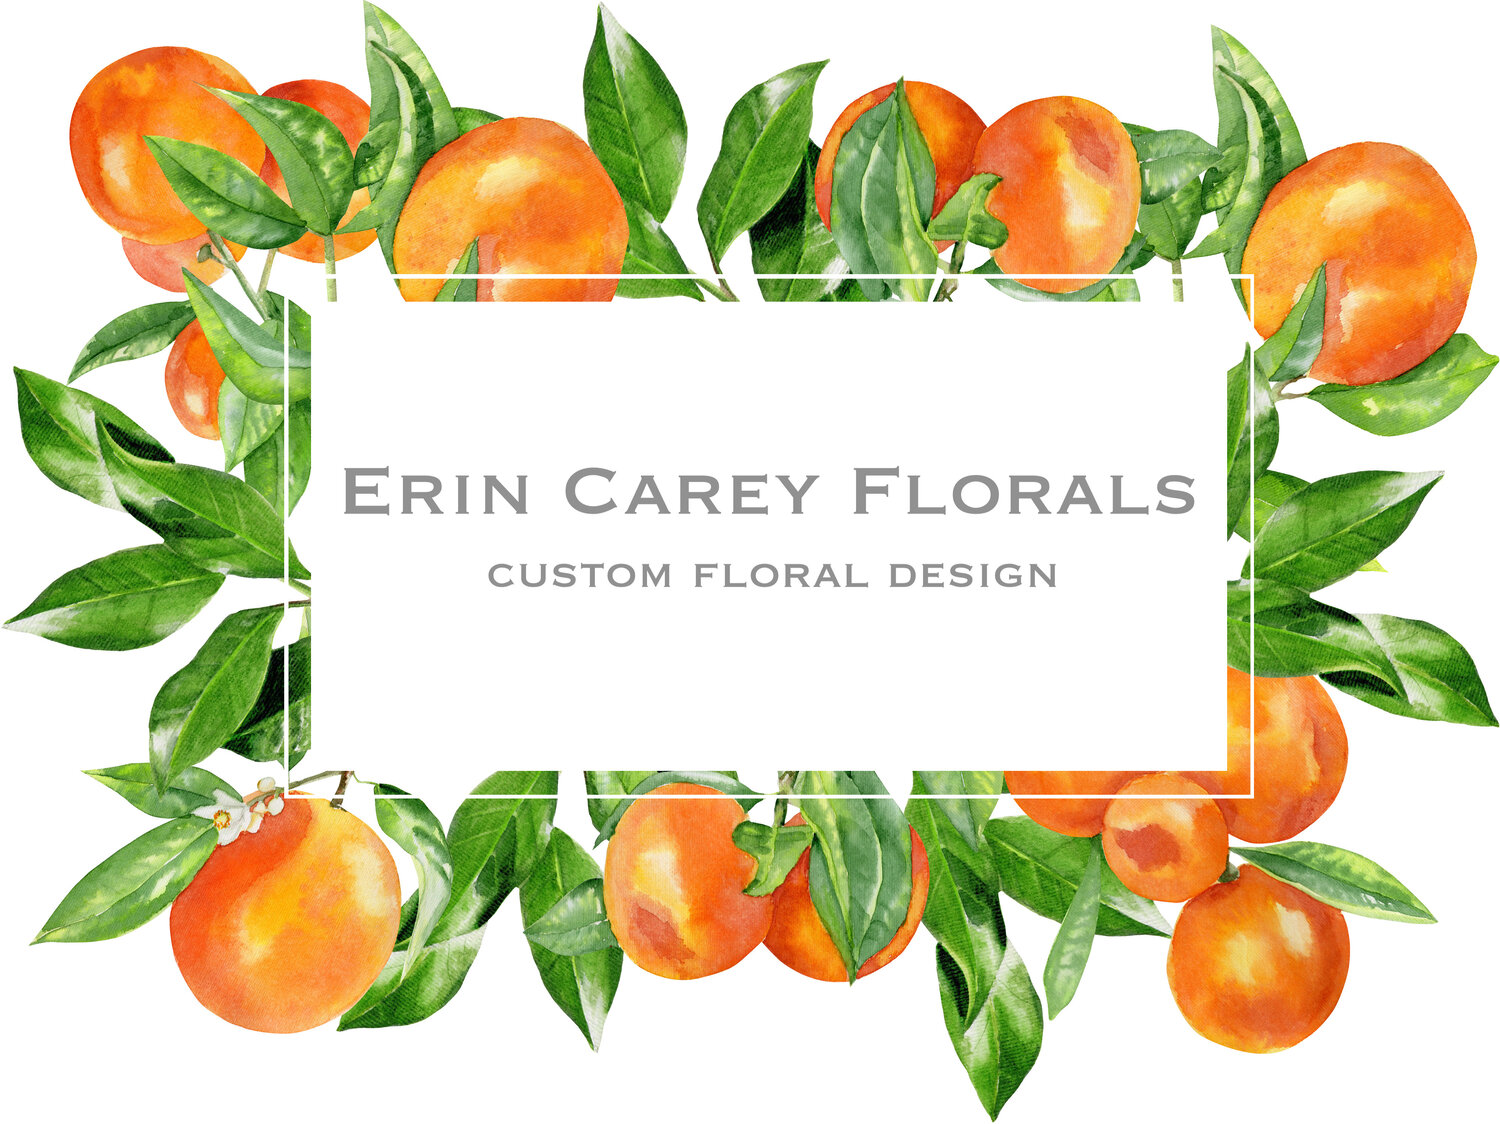 Erin Carey Florals